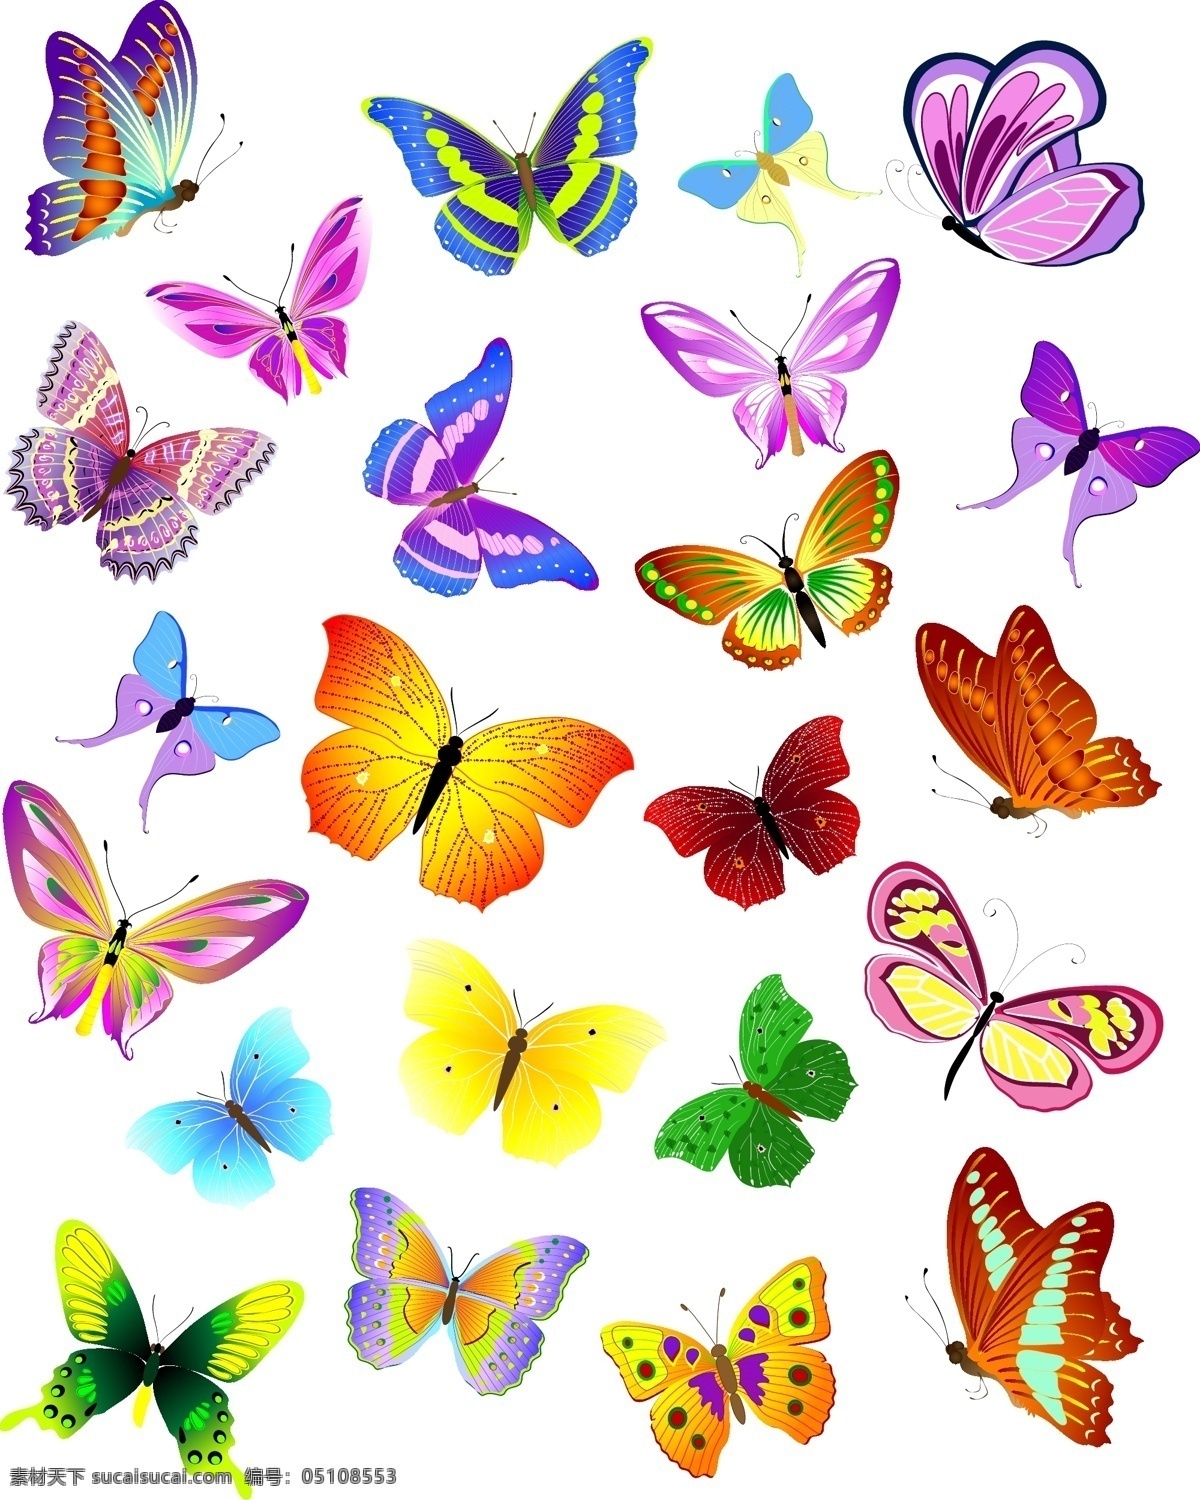 蝴蝶矢量素材 蝴蝶矢量 蝴蝶素材 蝴蝶 butterfly 共享设计矢量 生物世界 昆虫